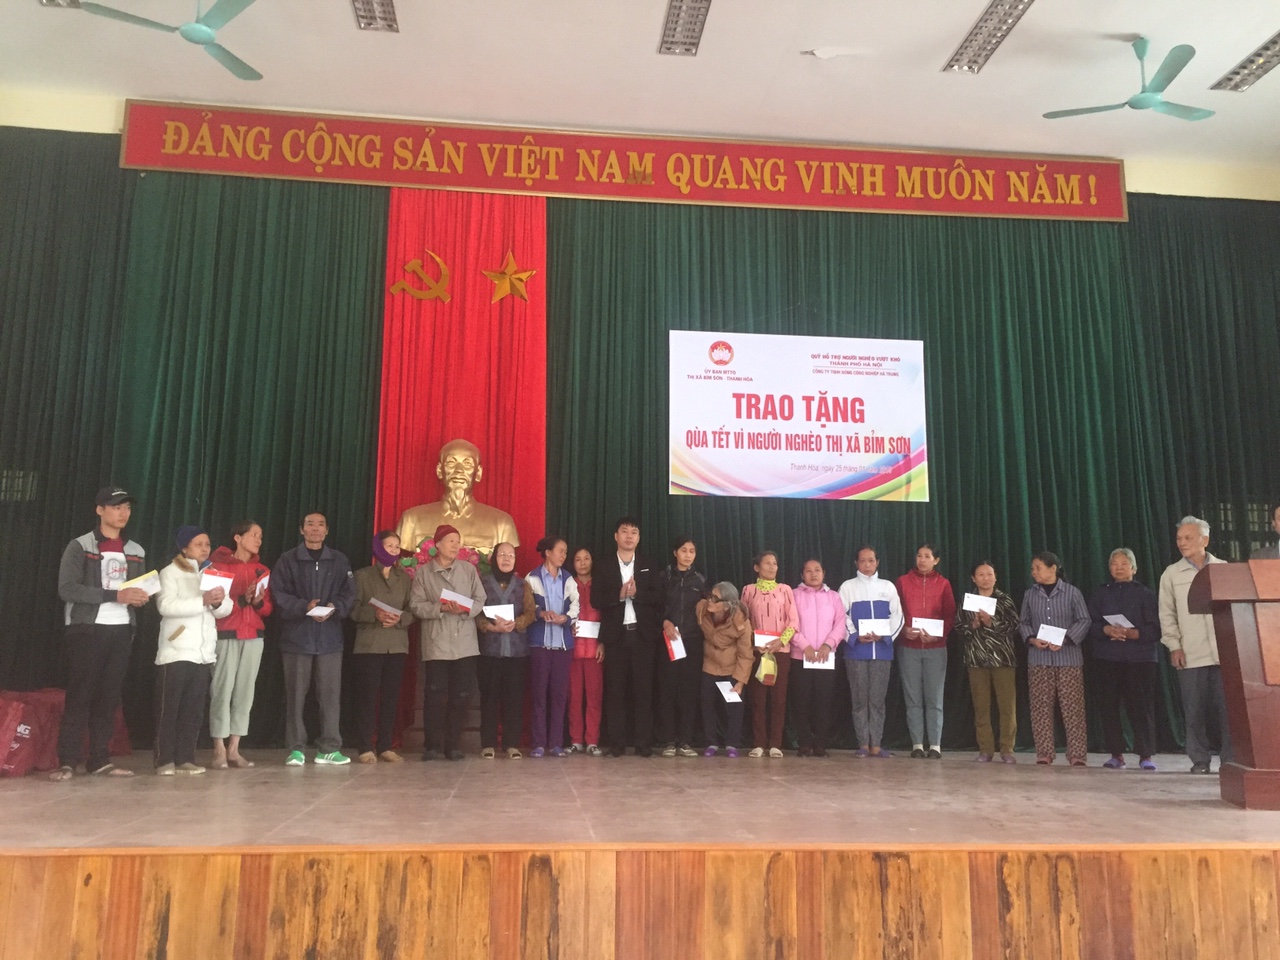 Xi măng Long Sơn – Chung tay chăm lo tết cho người nghèo Xuân Kỷ Hợi.